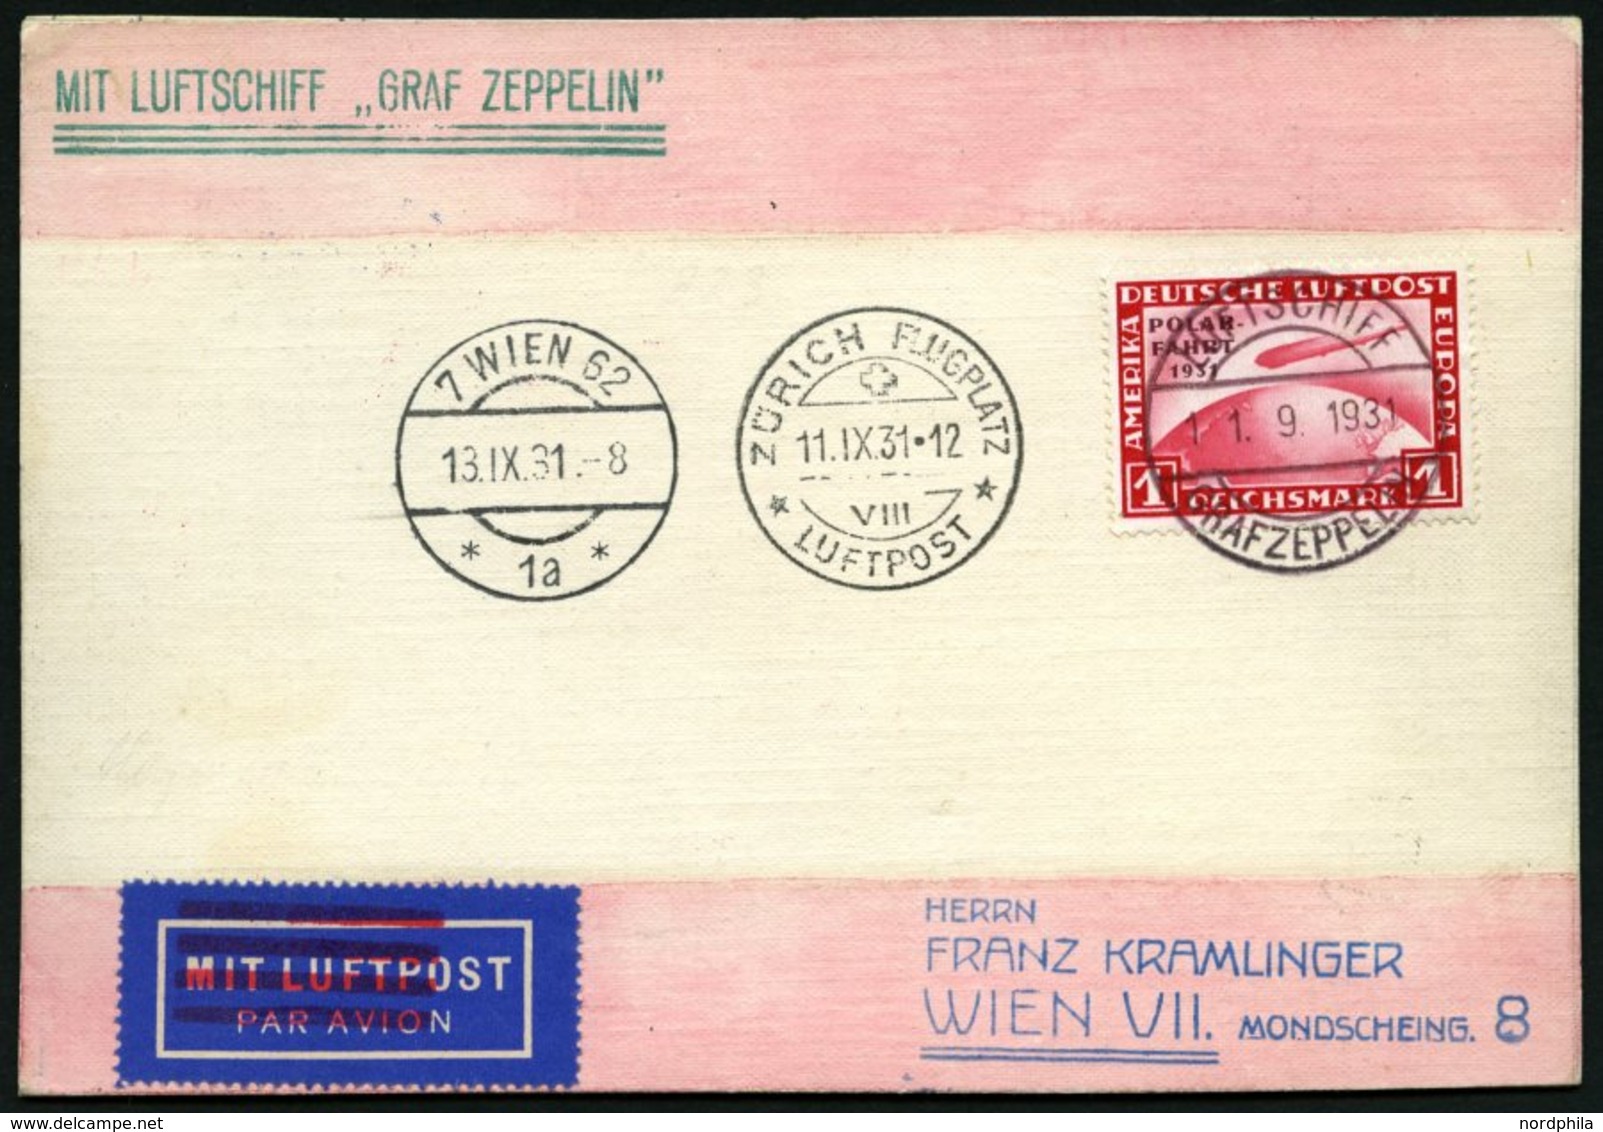 ZEPPELINPOST 127Ab BRIEF, 1931, Zürichfahrt, Bordpost, Frankiert Mit 1 RM Polarfahrt, Prachtkarte Nach Wien - Airmail & Zeppelin